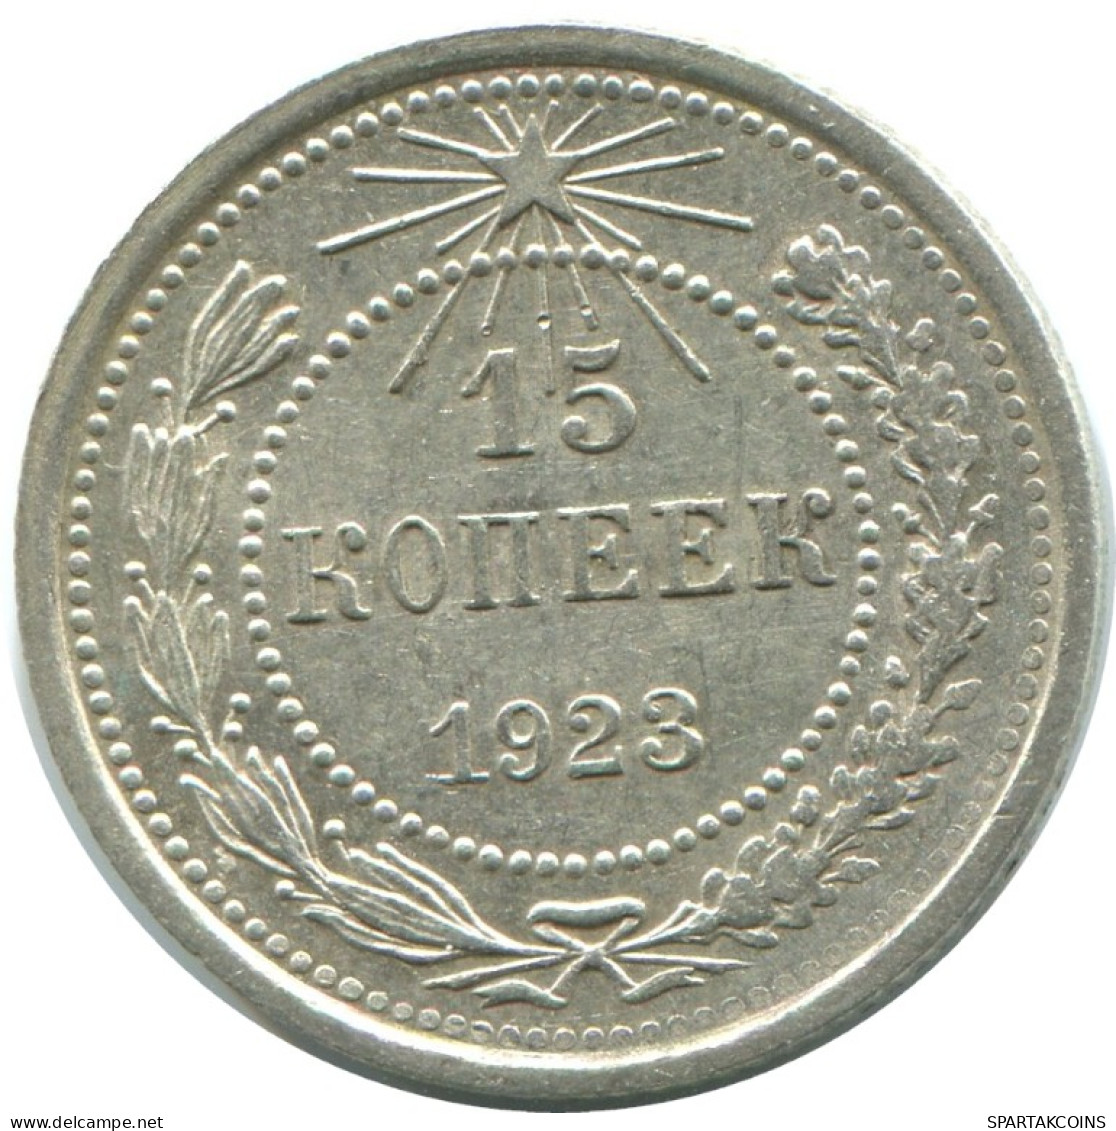 15 KOPEKS 1923 RUSSLAND RUSSIA RSFSR SILBER Münze HIGH GRADE #AF112.4.D.A - Russia